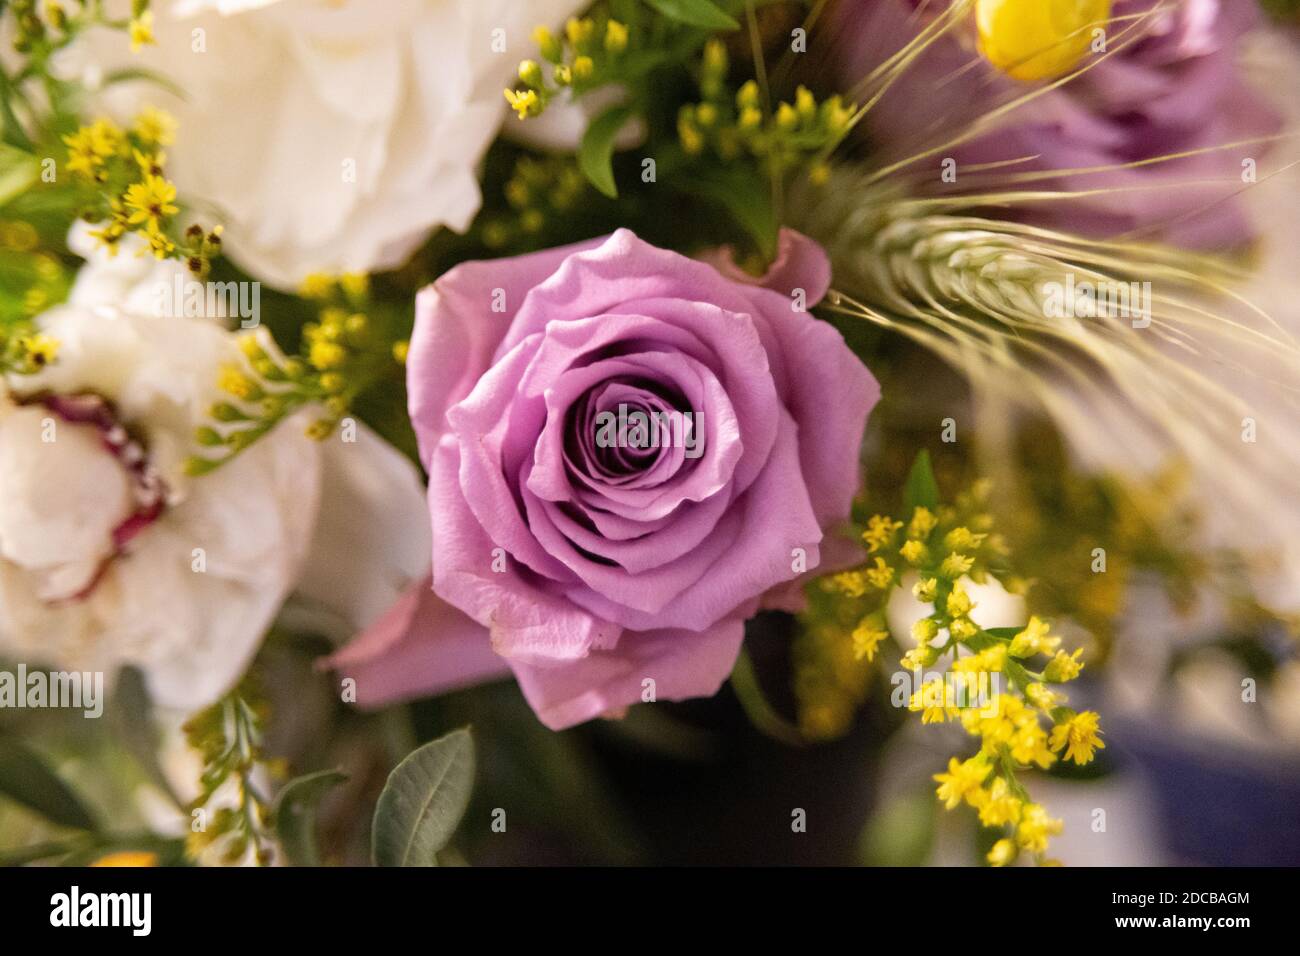 Magnifique rose rose chic et romantique dans un bouquet Banque D'Images